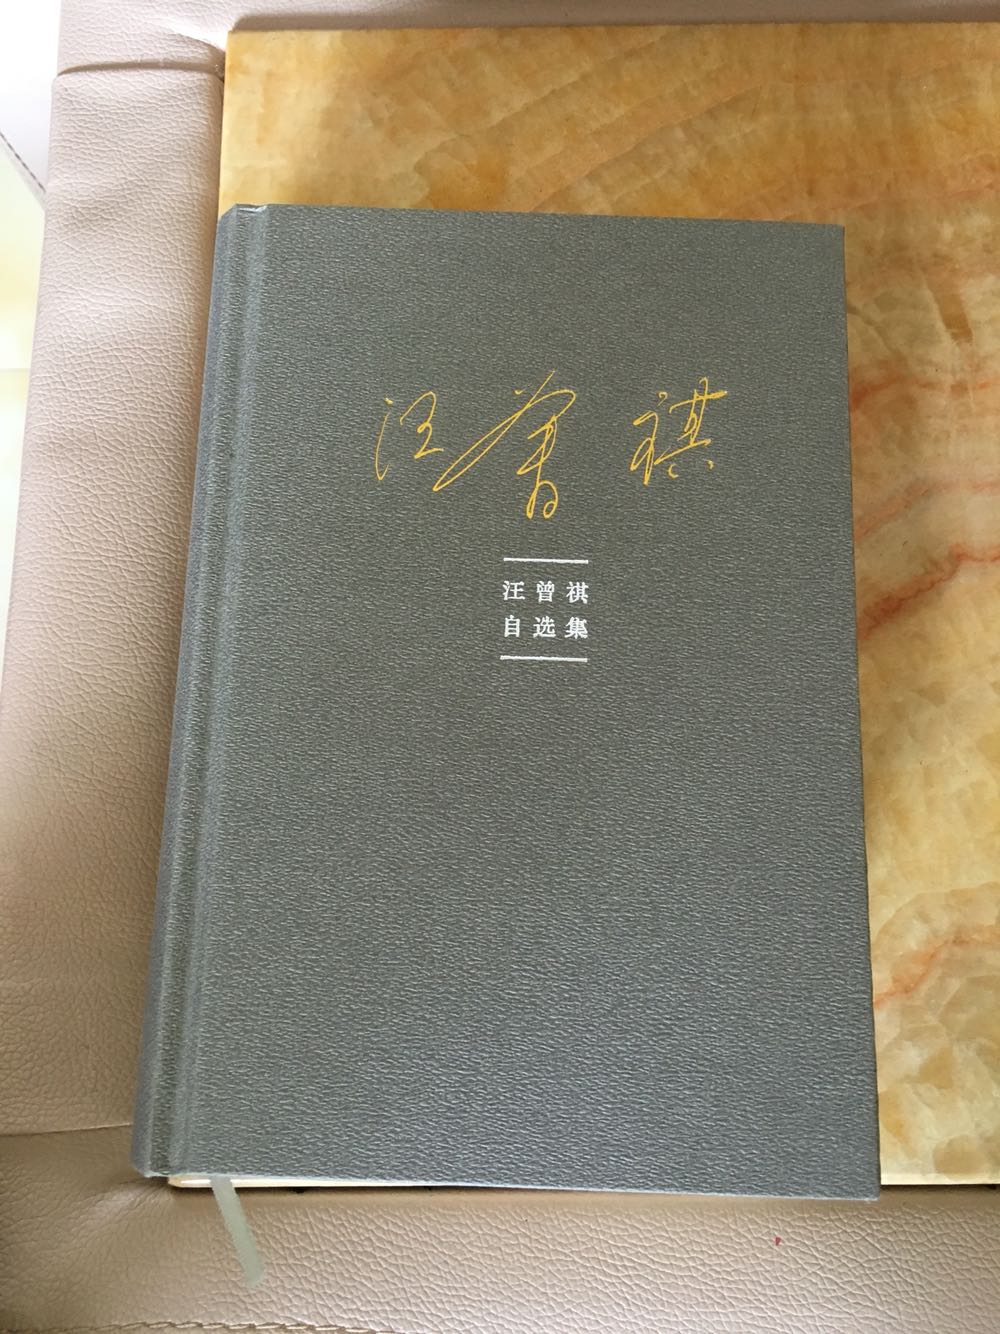 汪曾祺的书，内容不必评论……但是纸质很薄，如宣纸般，也许是为了映衬如水墨画般的文字吧^_^